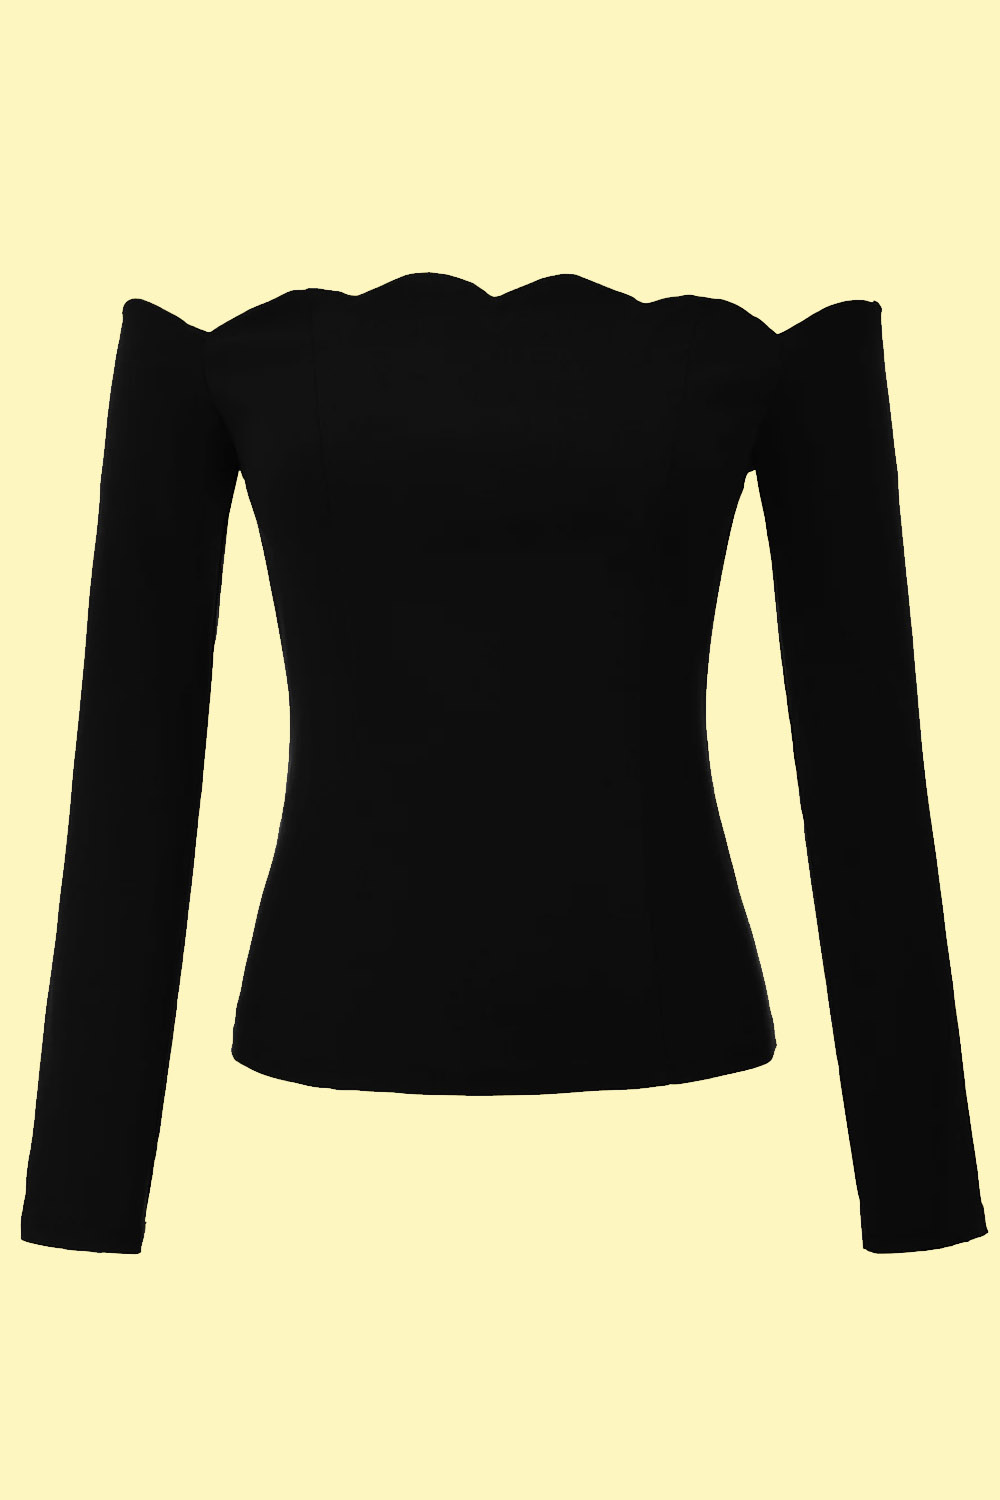 Camiseta cuello barco negra de mujer